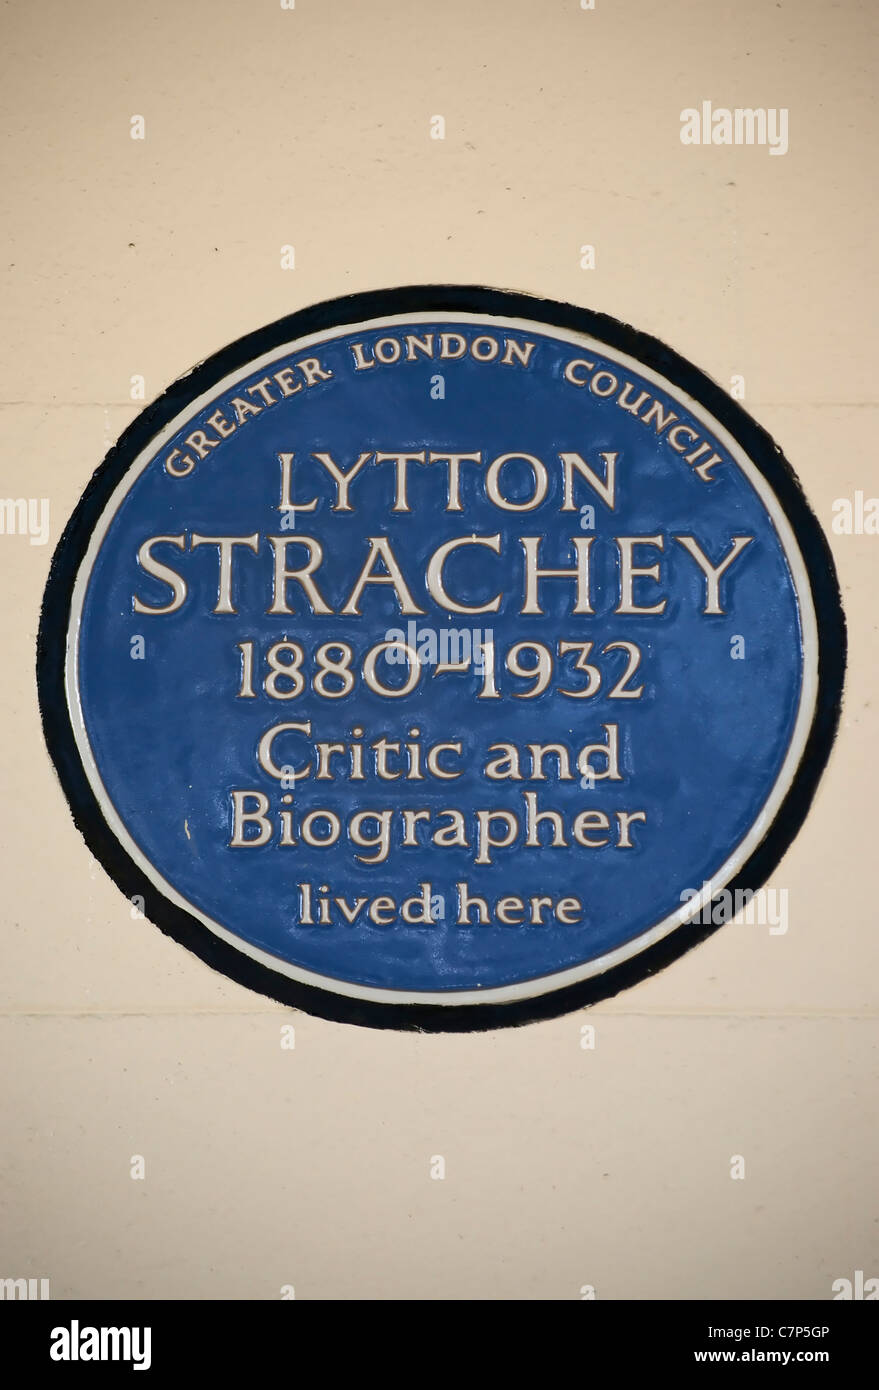 mehr London Rat blaue Plakette markiert ein Haus der Kritiker und Biograph Lytton Strachey, Gordon Quadrat, London, England Stockfoto